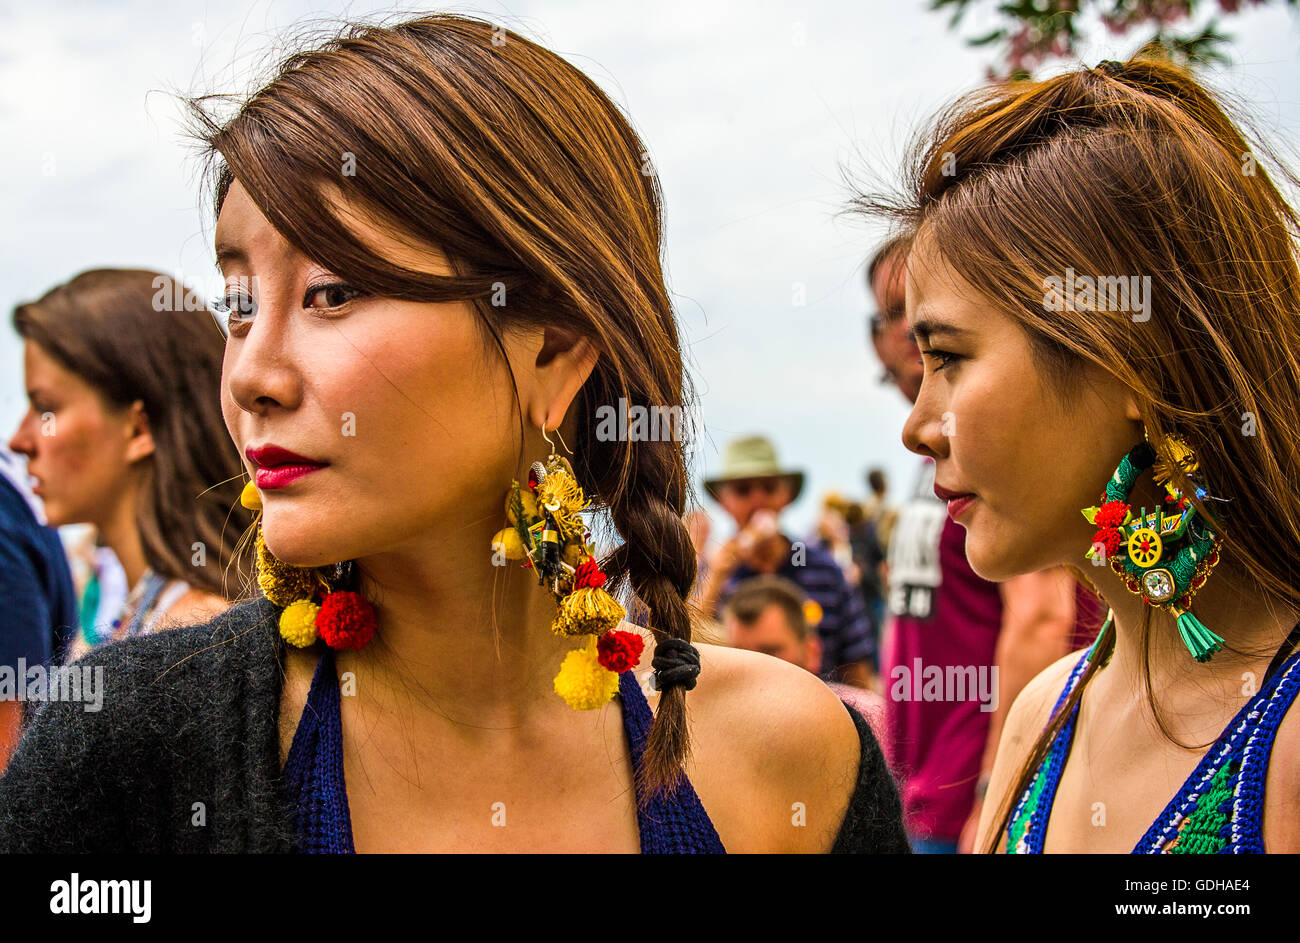 Italien-Sizilien-Taormina-Touristen tragen Ohrringe mit verweisen auf Sizilien (sizilianischen Karren, Zitrusfrüchte, etc..) Stockfoto